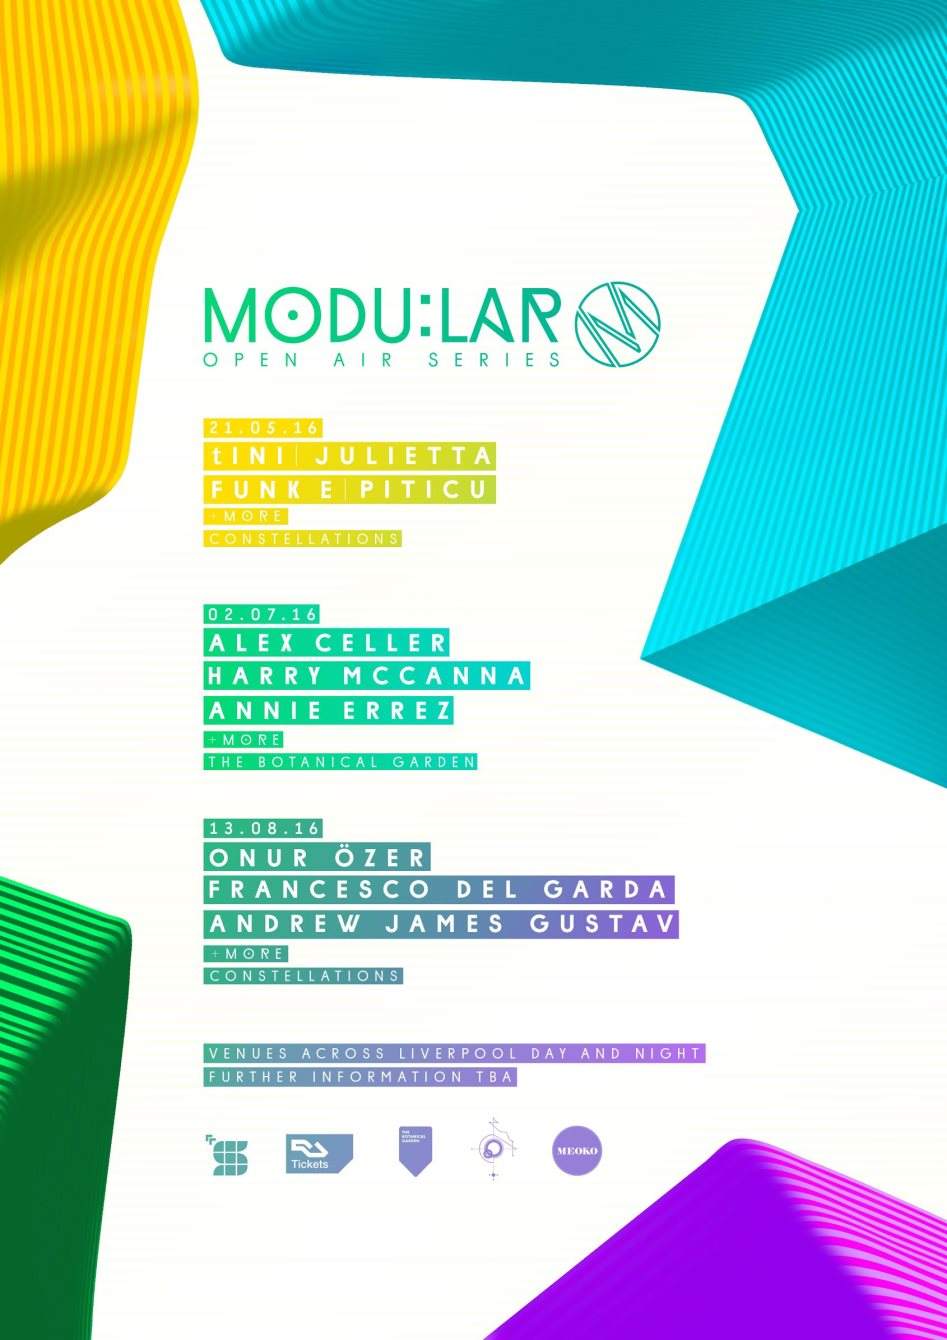 Modular Open Air presents Tini, Julietta, Funk E & Piticu More - Página frontal